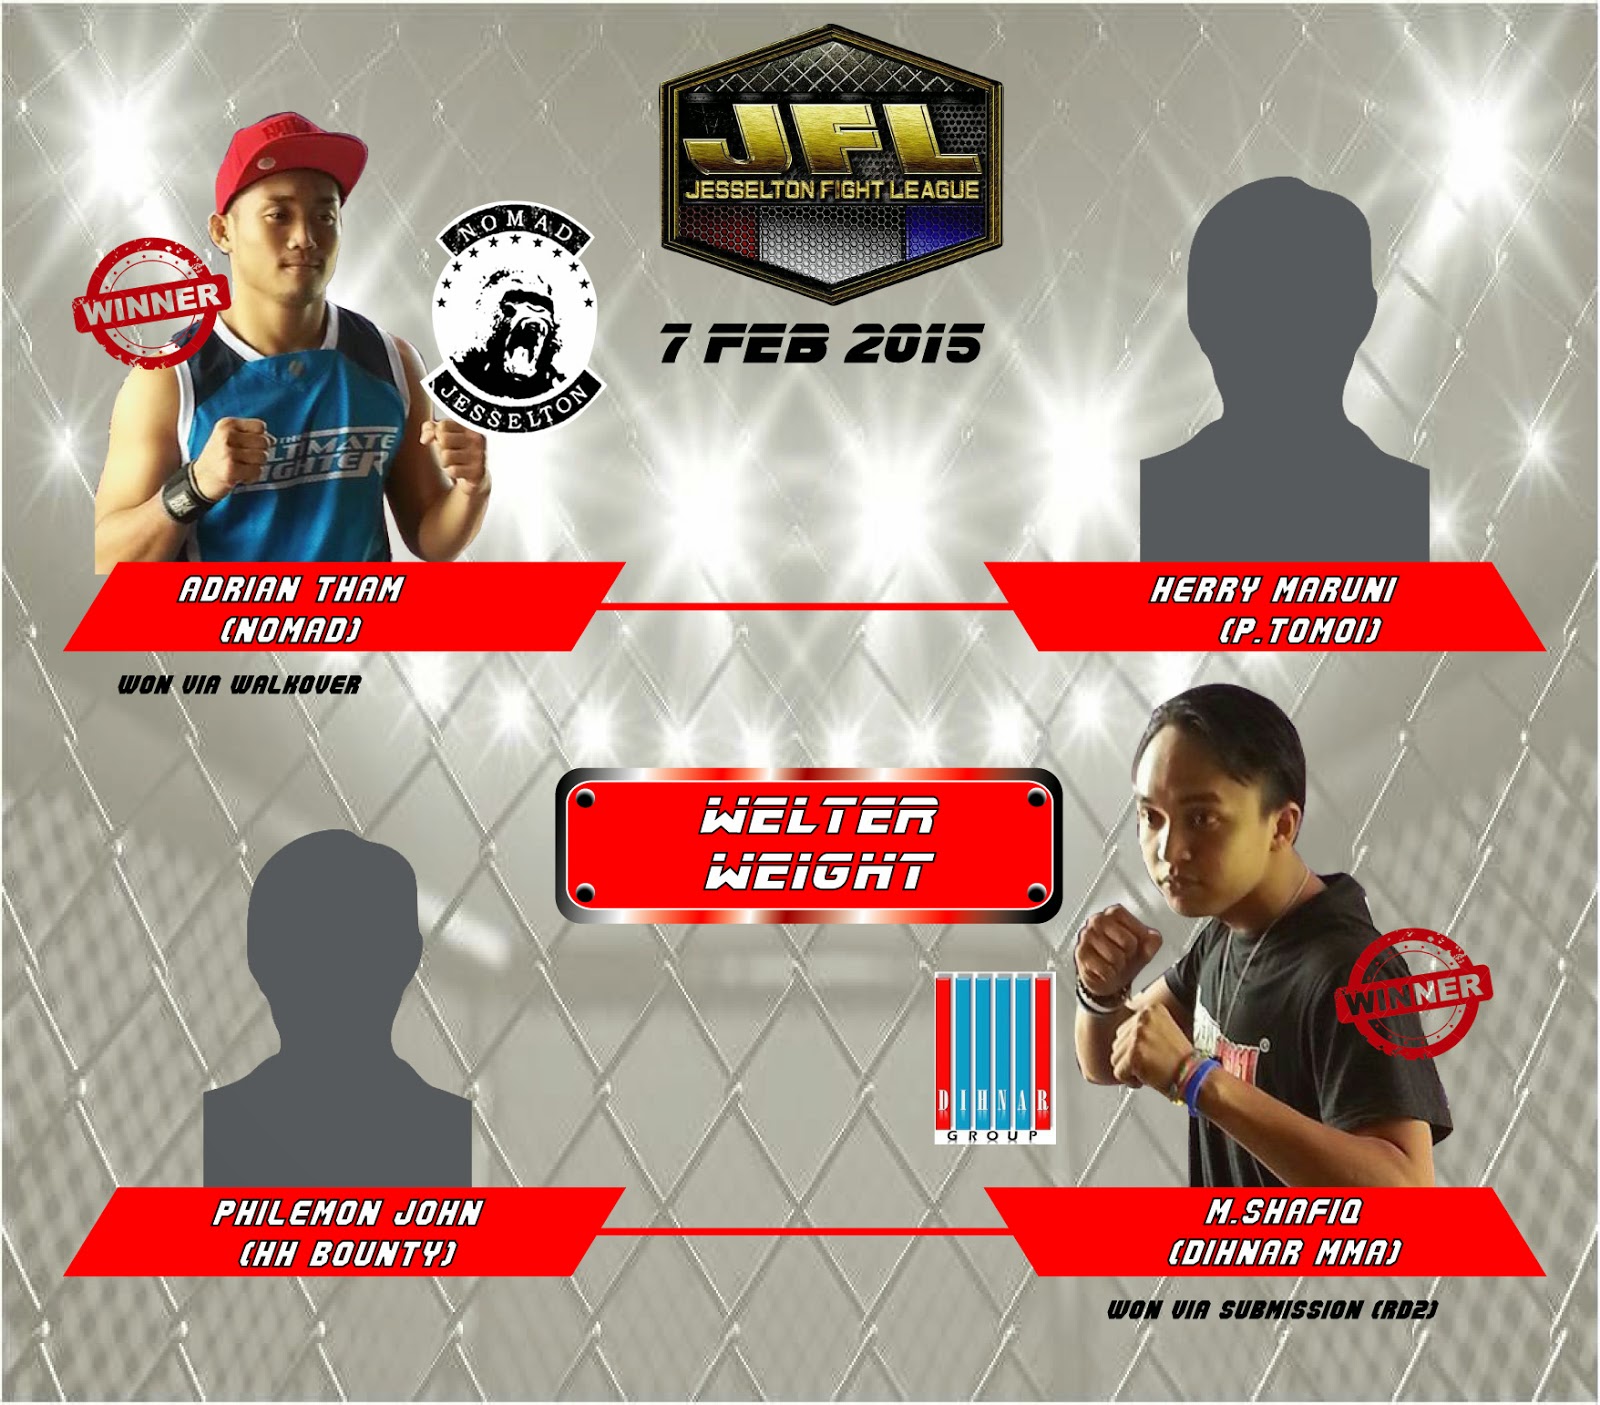 Jfl 15 The Ladder Match Lightweight Welterweight Results Warriors Asia